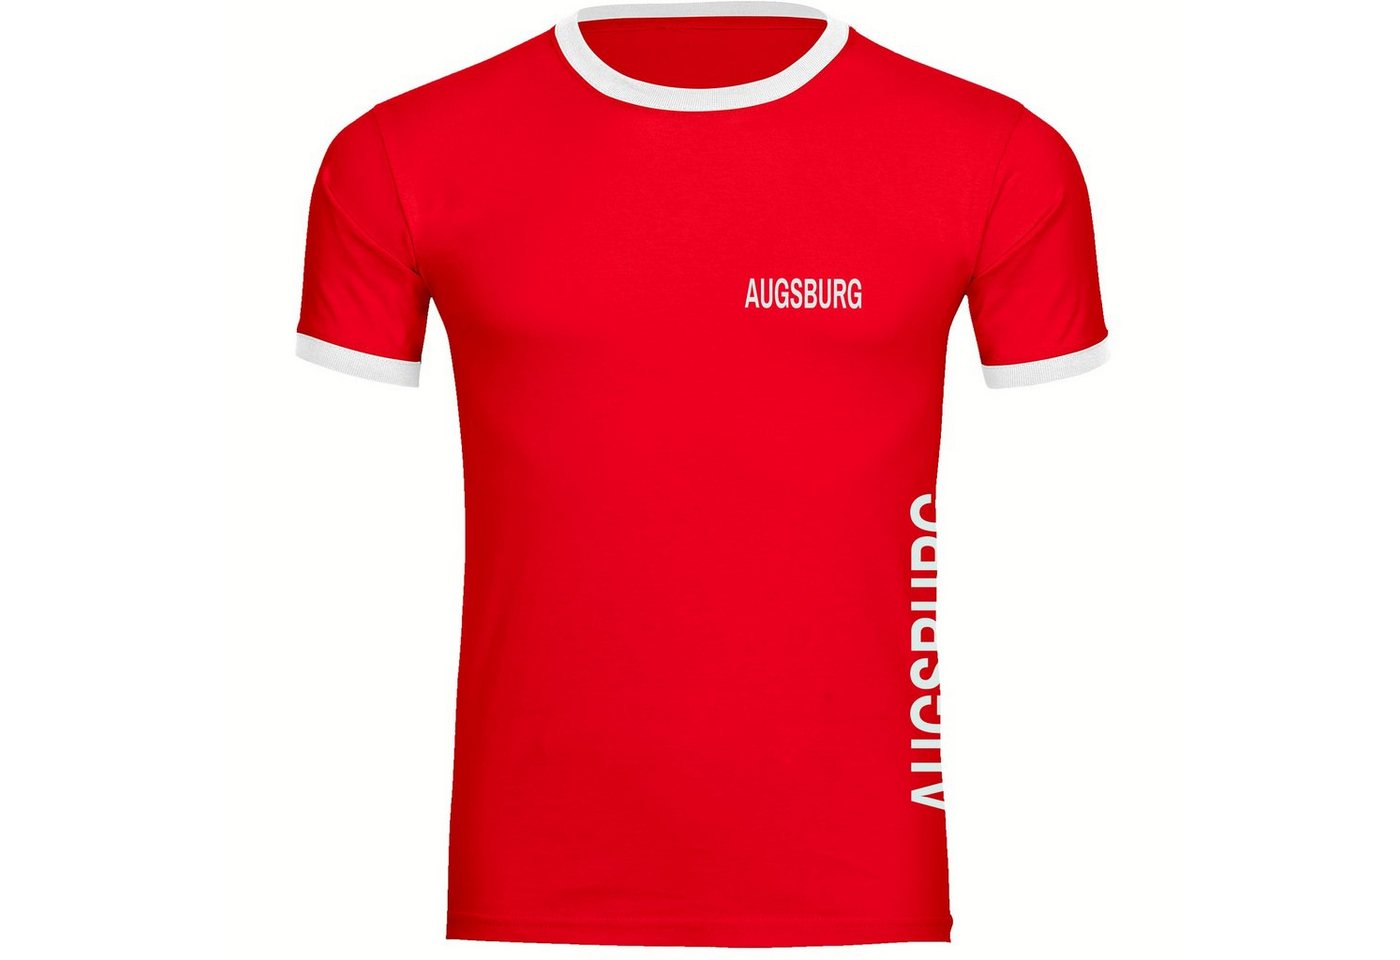 multifanshop T-Shirt Kontrast Augsburg - Brust & Seite - Männer von multifanshop